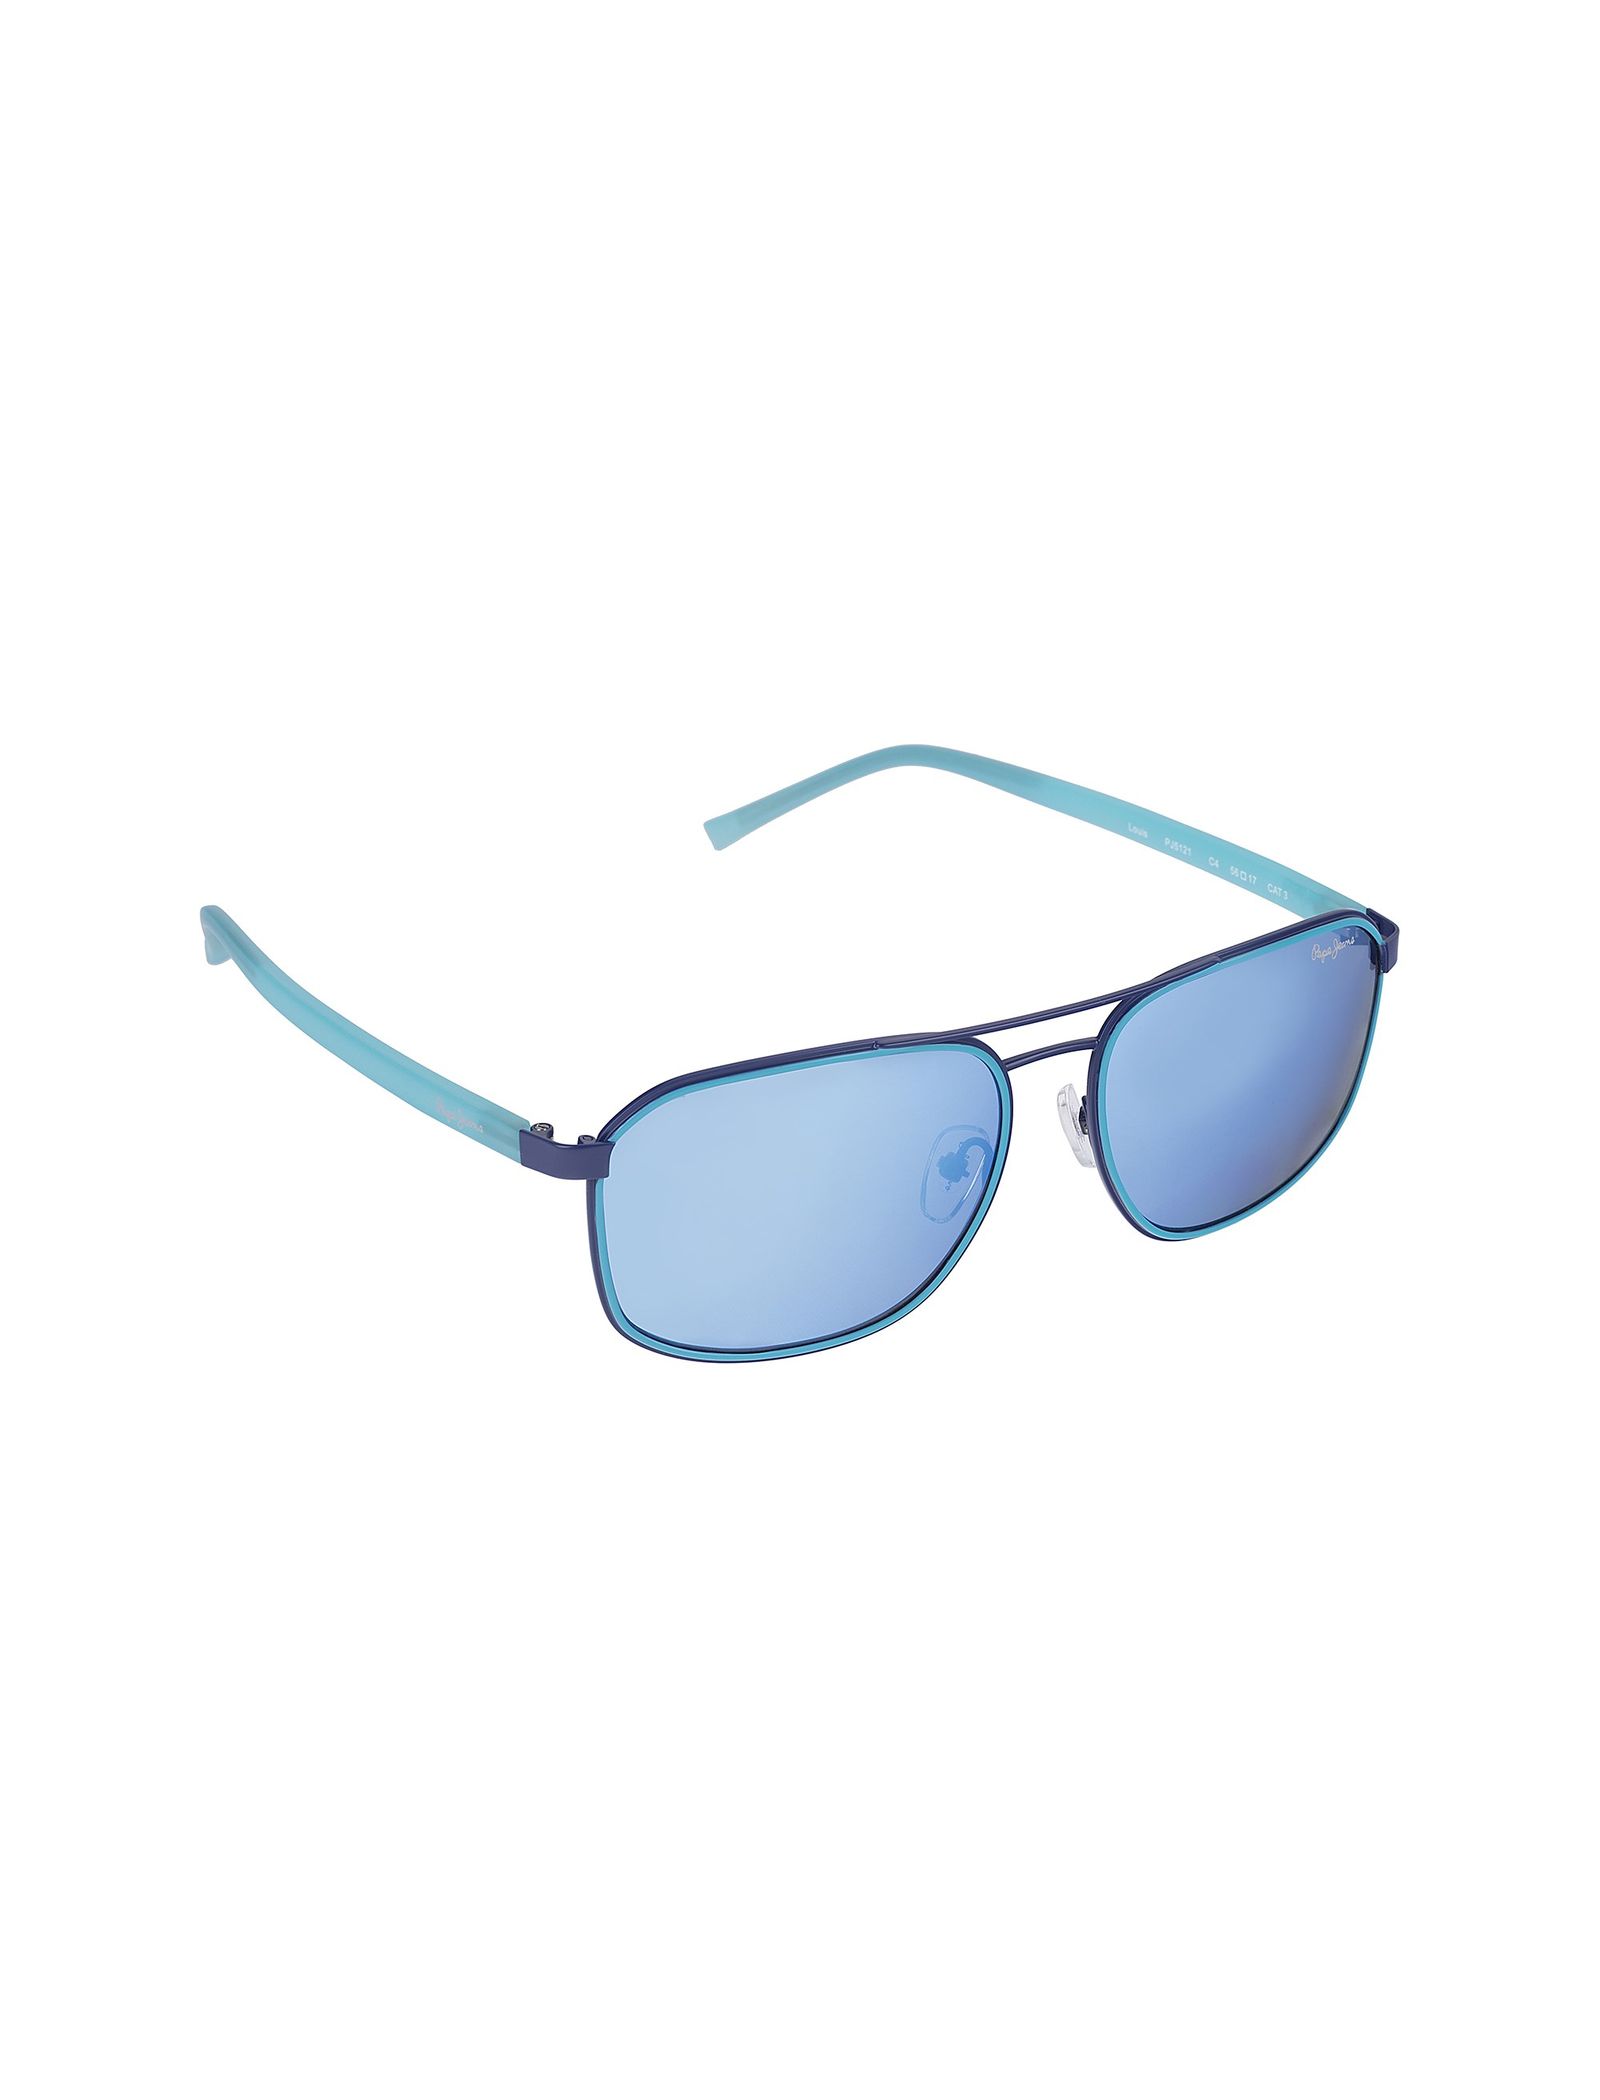 عینک آفتابی خلبانی زنانه - پپه جینز - آبي - 3